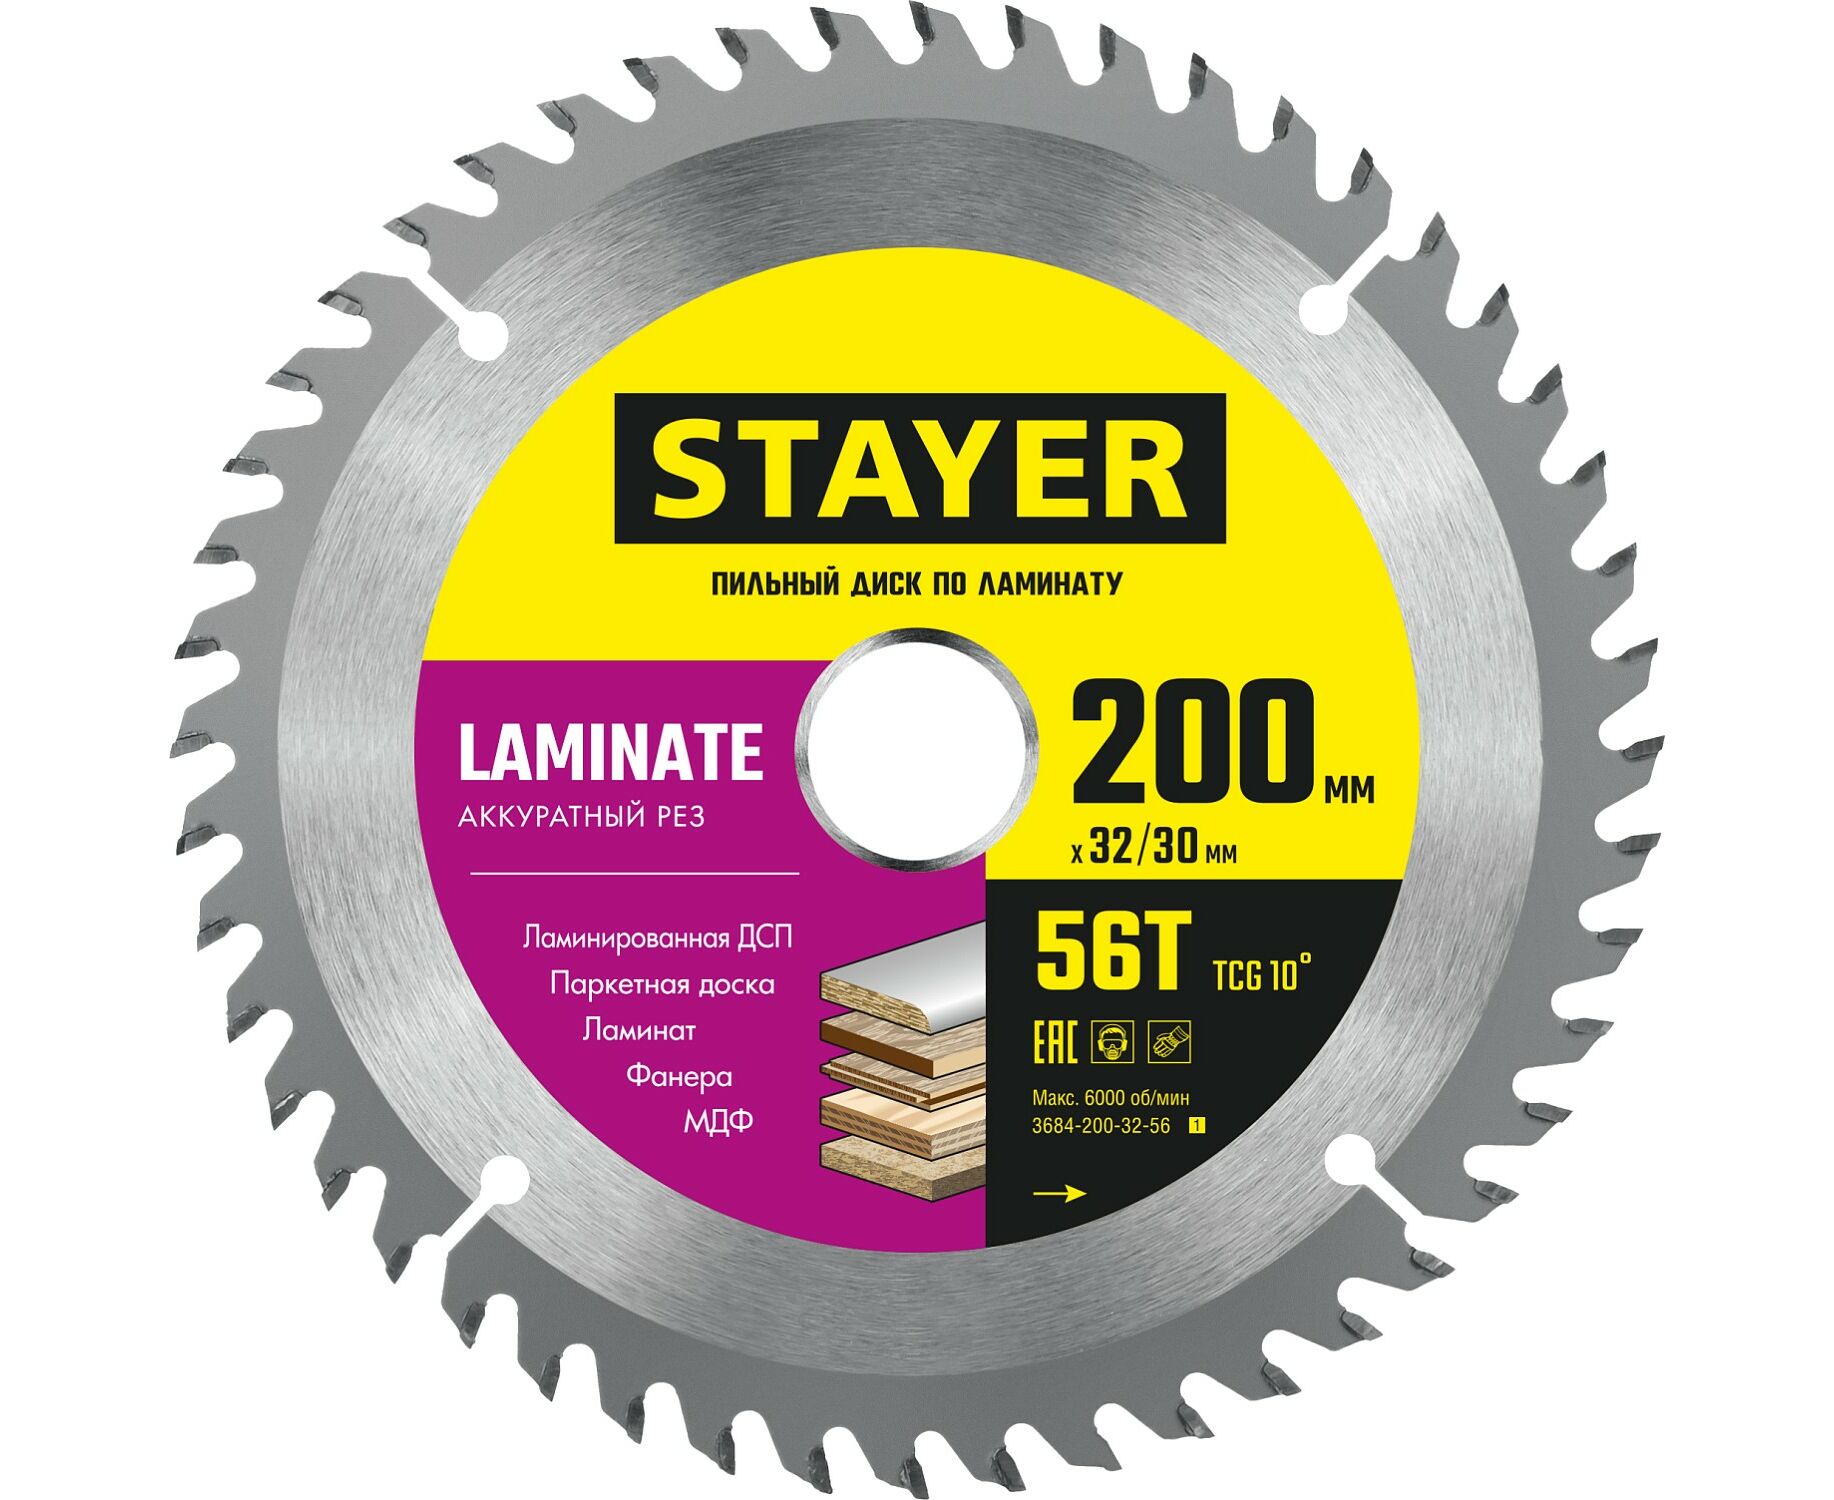 Пильный диск STAYER LAMINATE 200 x 32/30мм 56T, по ламинату, аккуратный рез